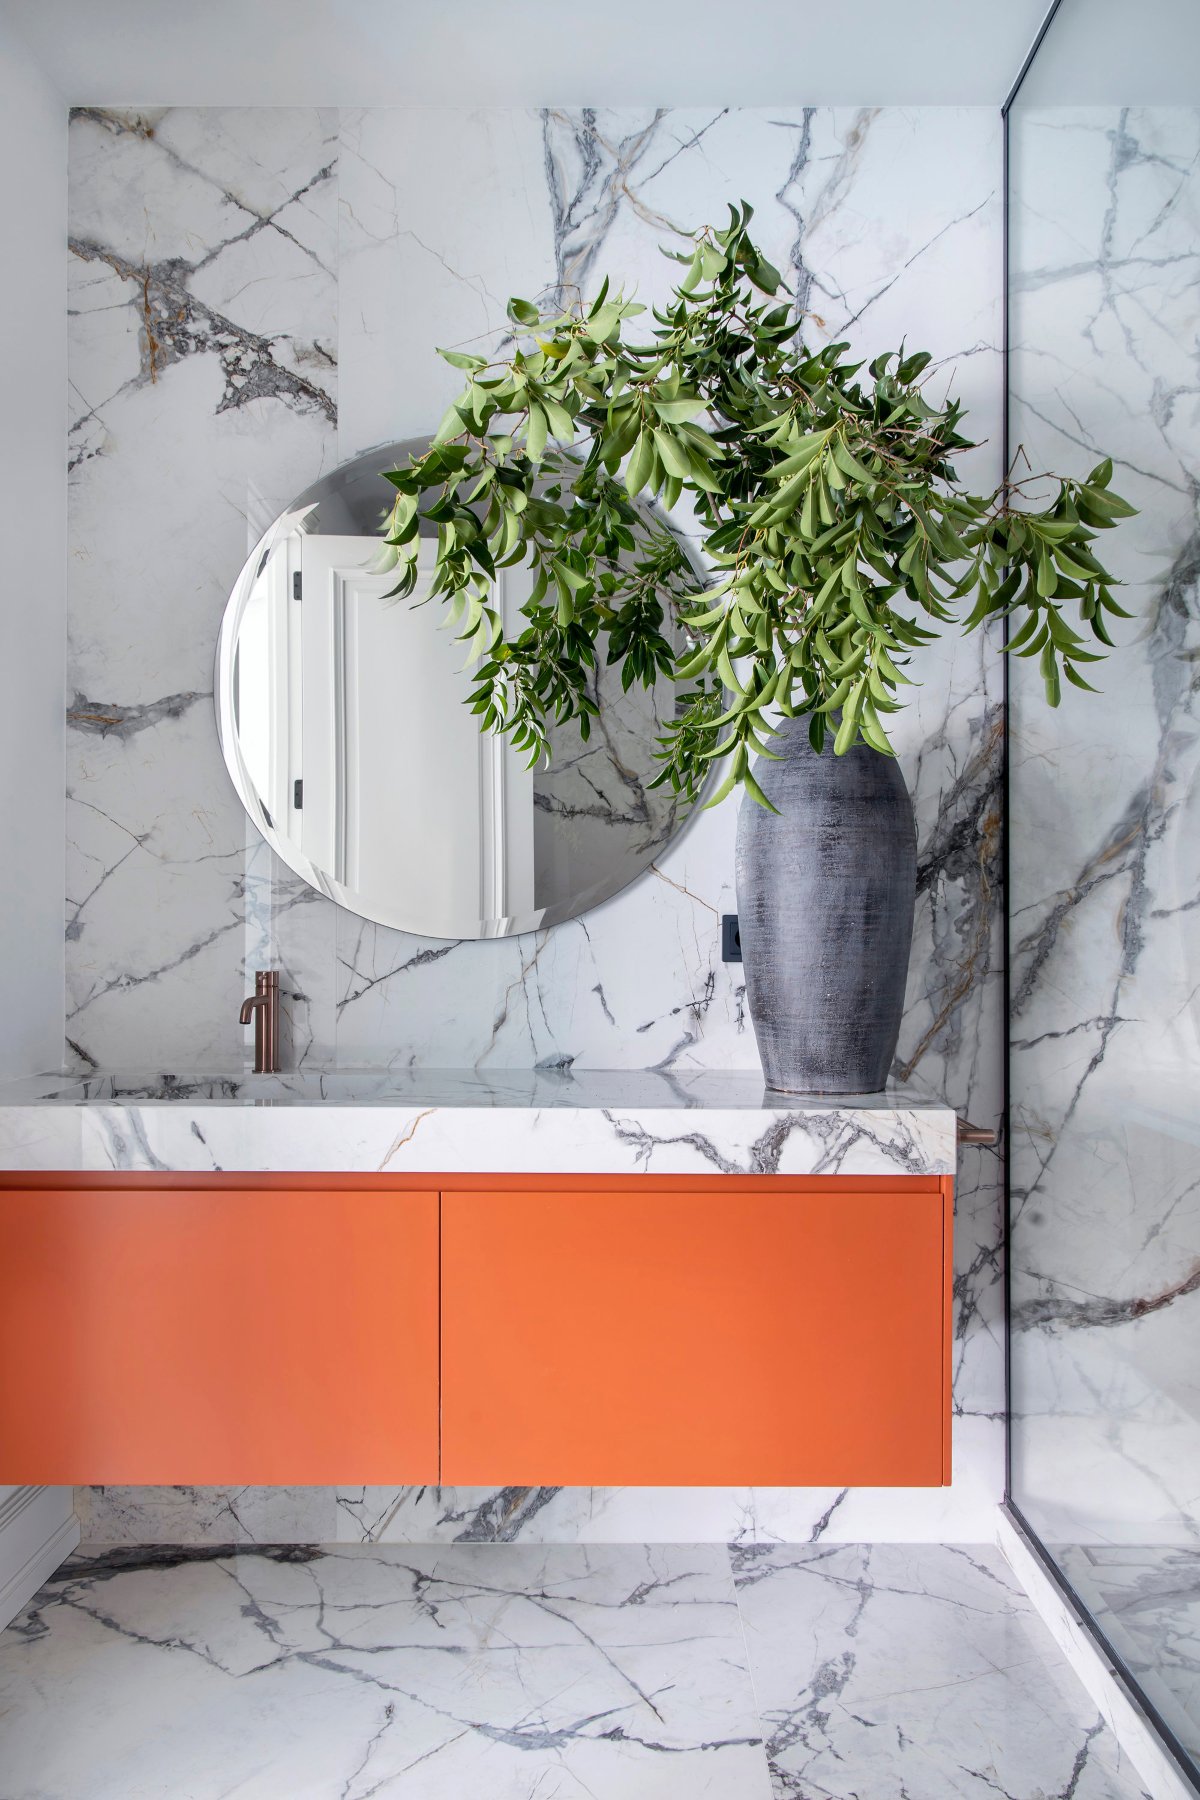 Baño moderno en mármol y muebles naranjas 